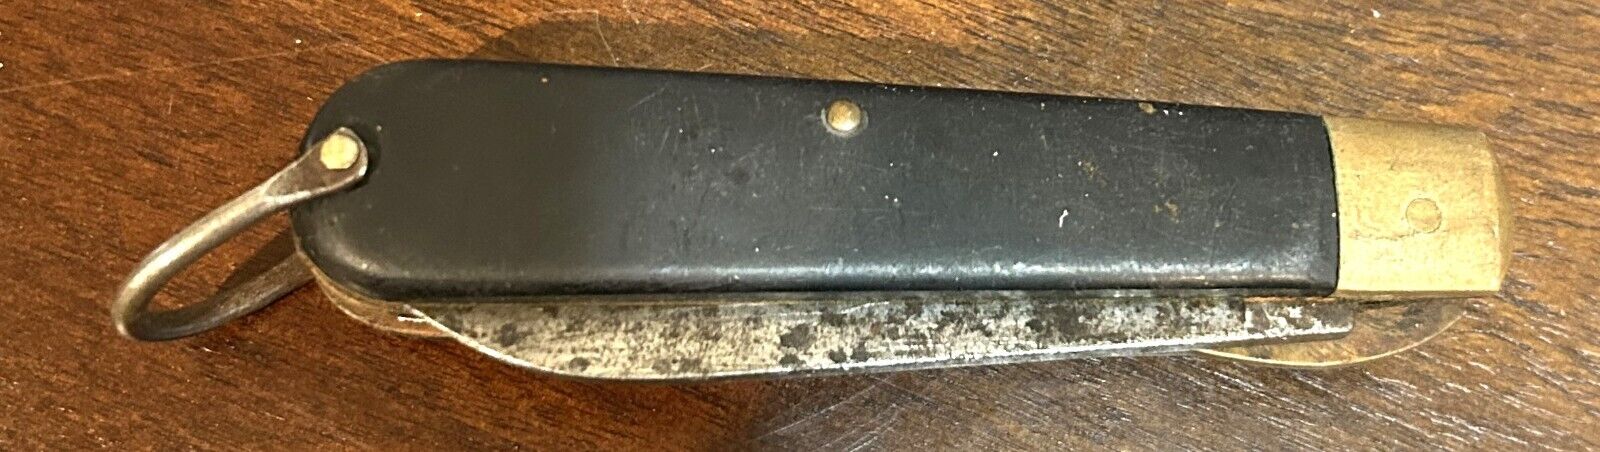 Vintage Black/Gold Camillus Pocket Knife